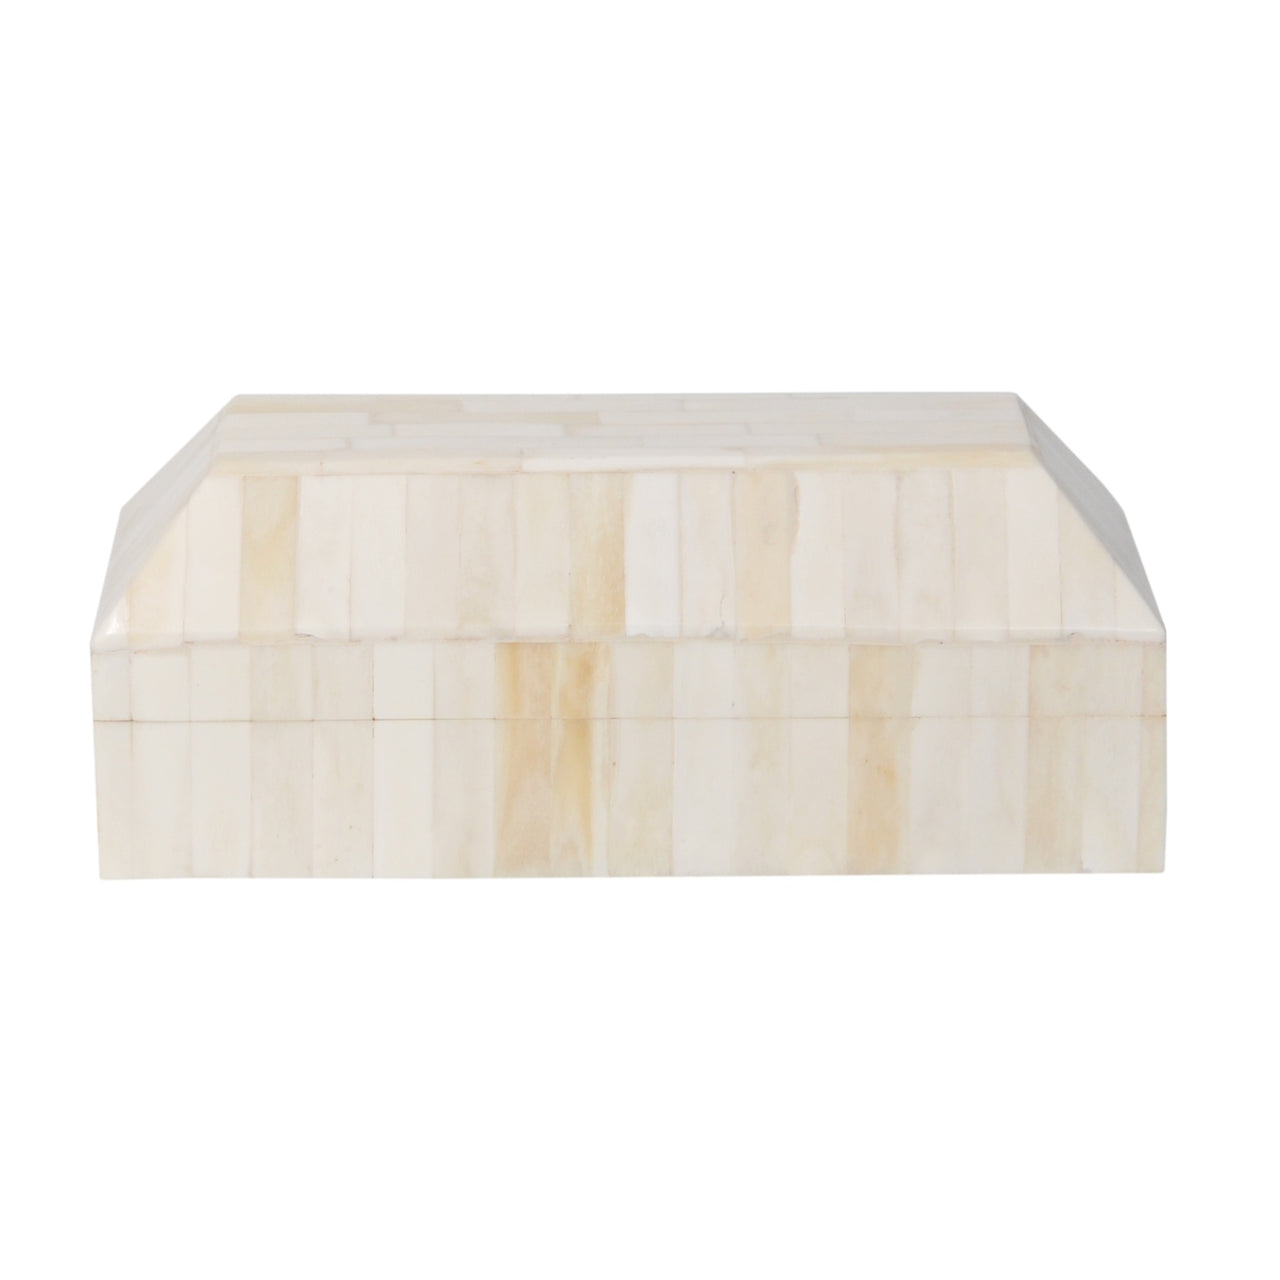 Bone In-Lay Box- Ivory